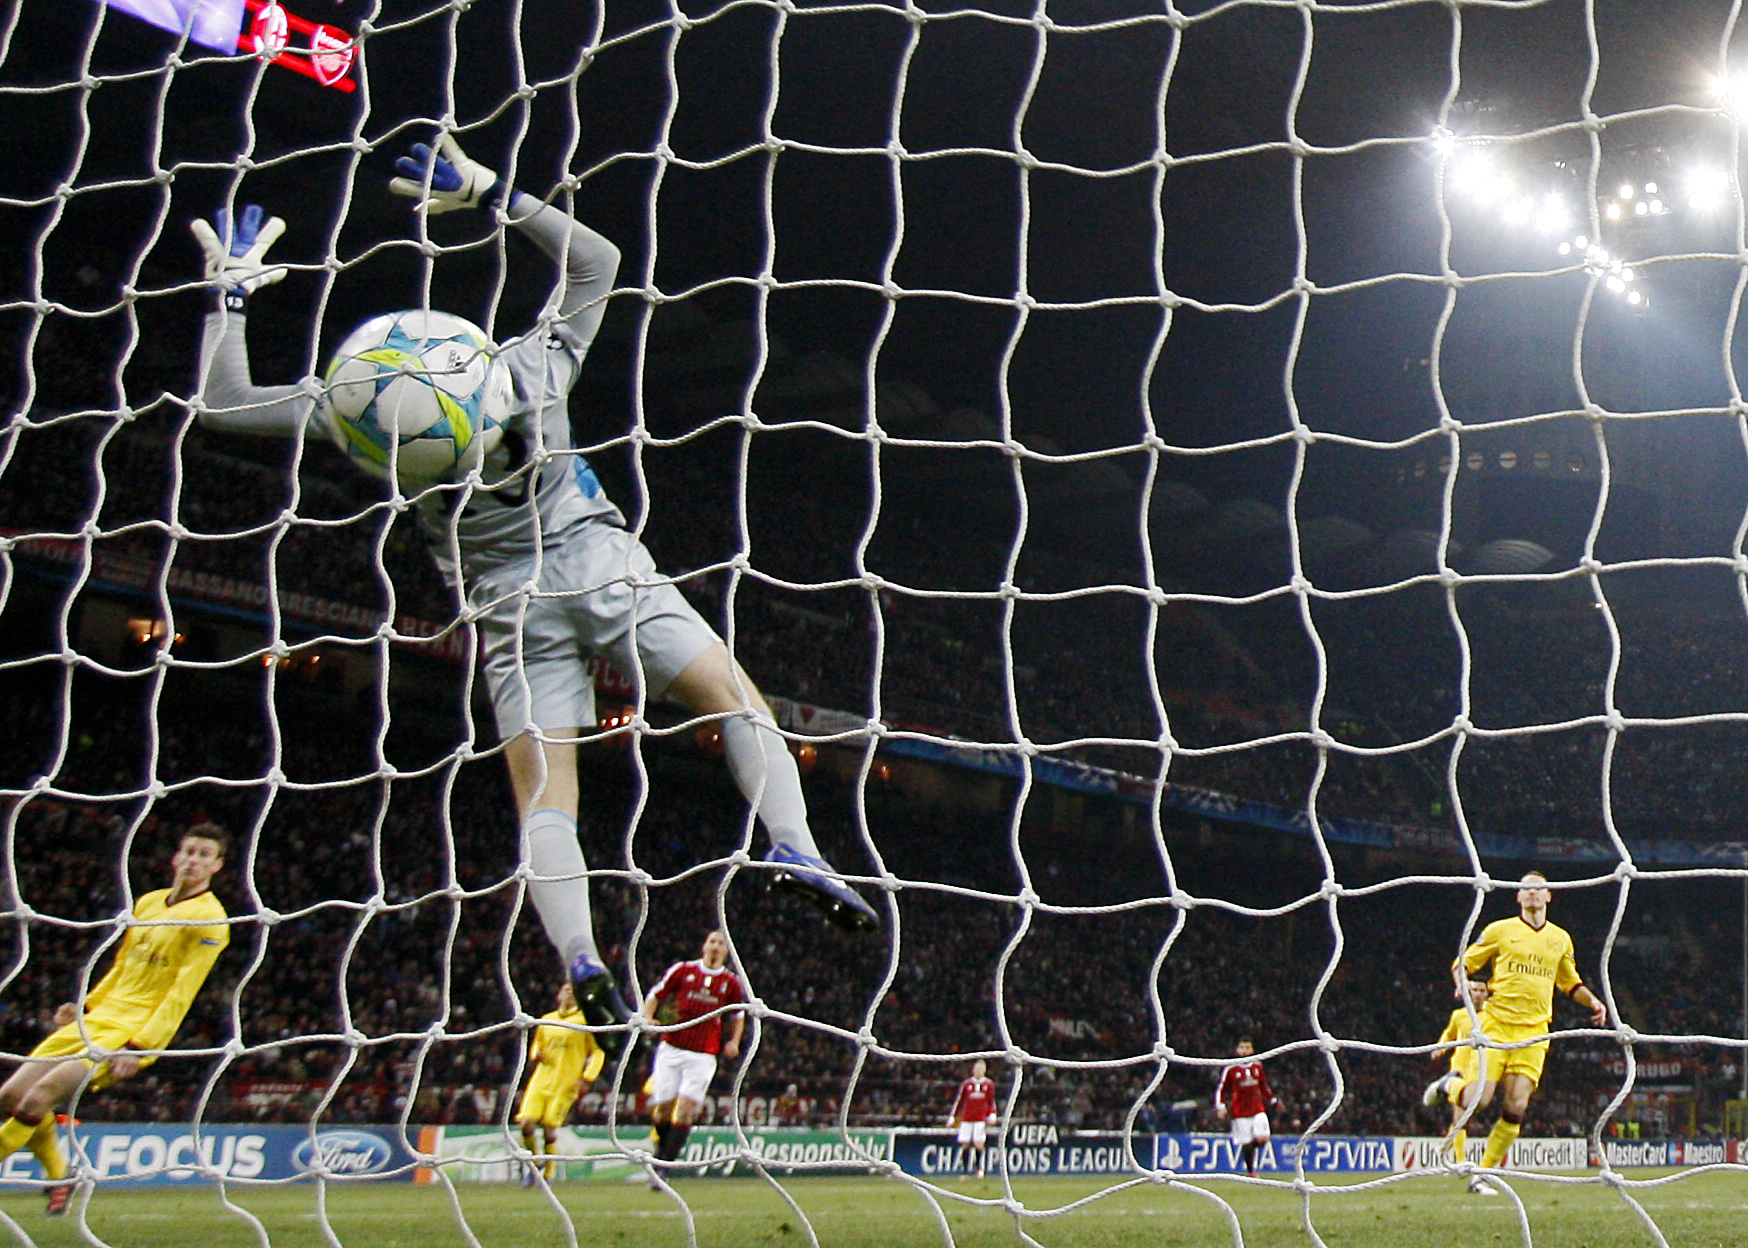 Milan rivstartade och det var en tyskghanan som inledde målskyttet. Wojciech Szczesny i Arsenal-målet var chanslös. 